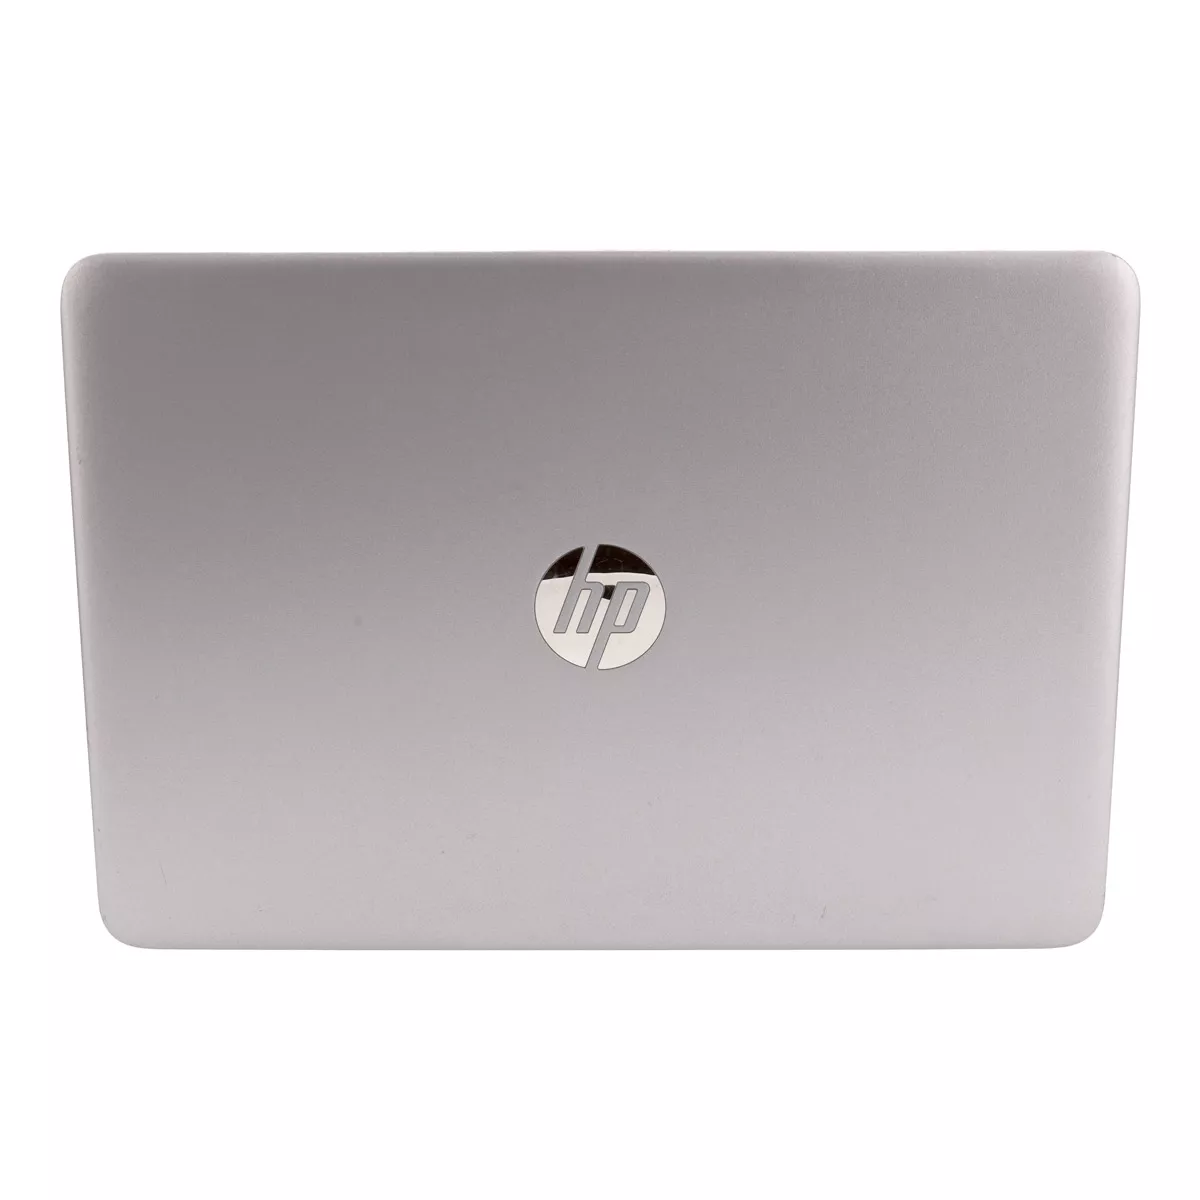 HP EliteBook 840 G3 Core i5 6300U 8 GB 240 GB M.2 SSD Webcam A+